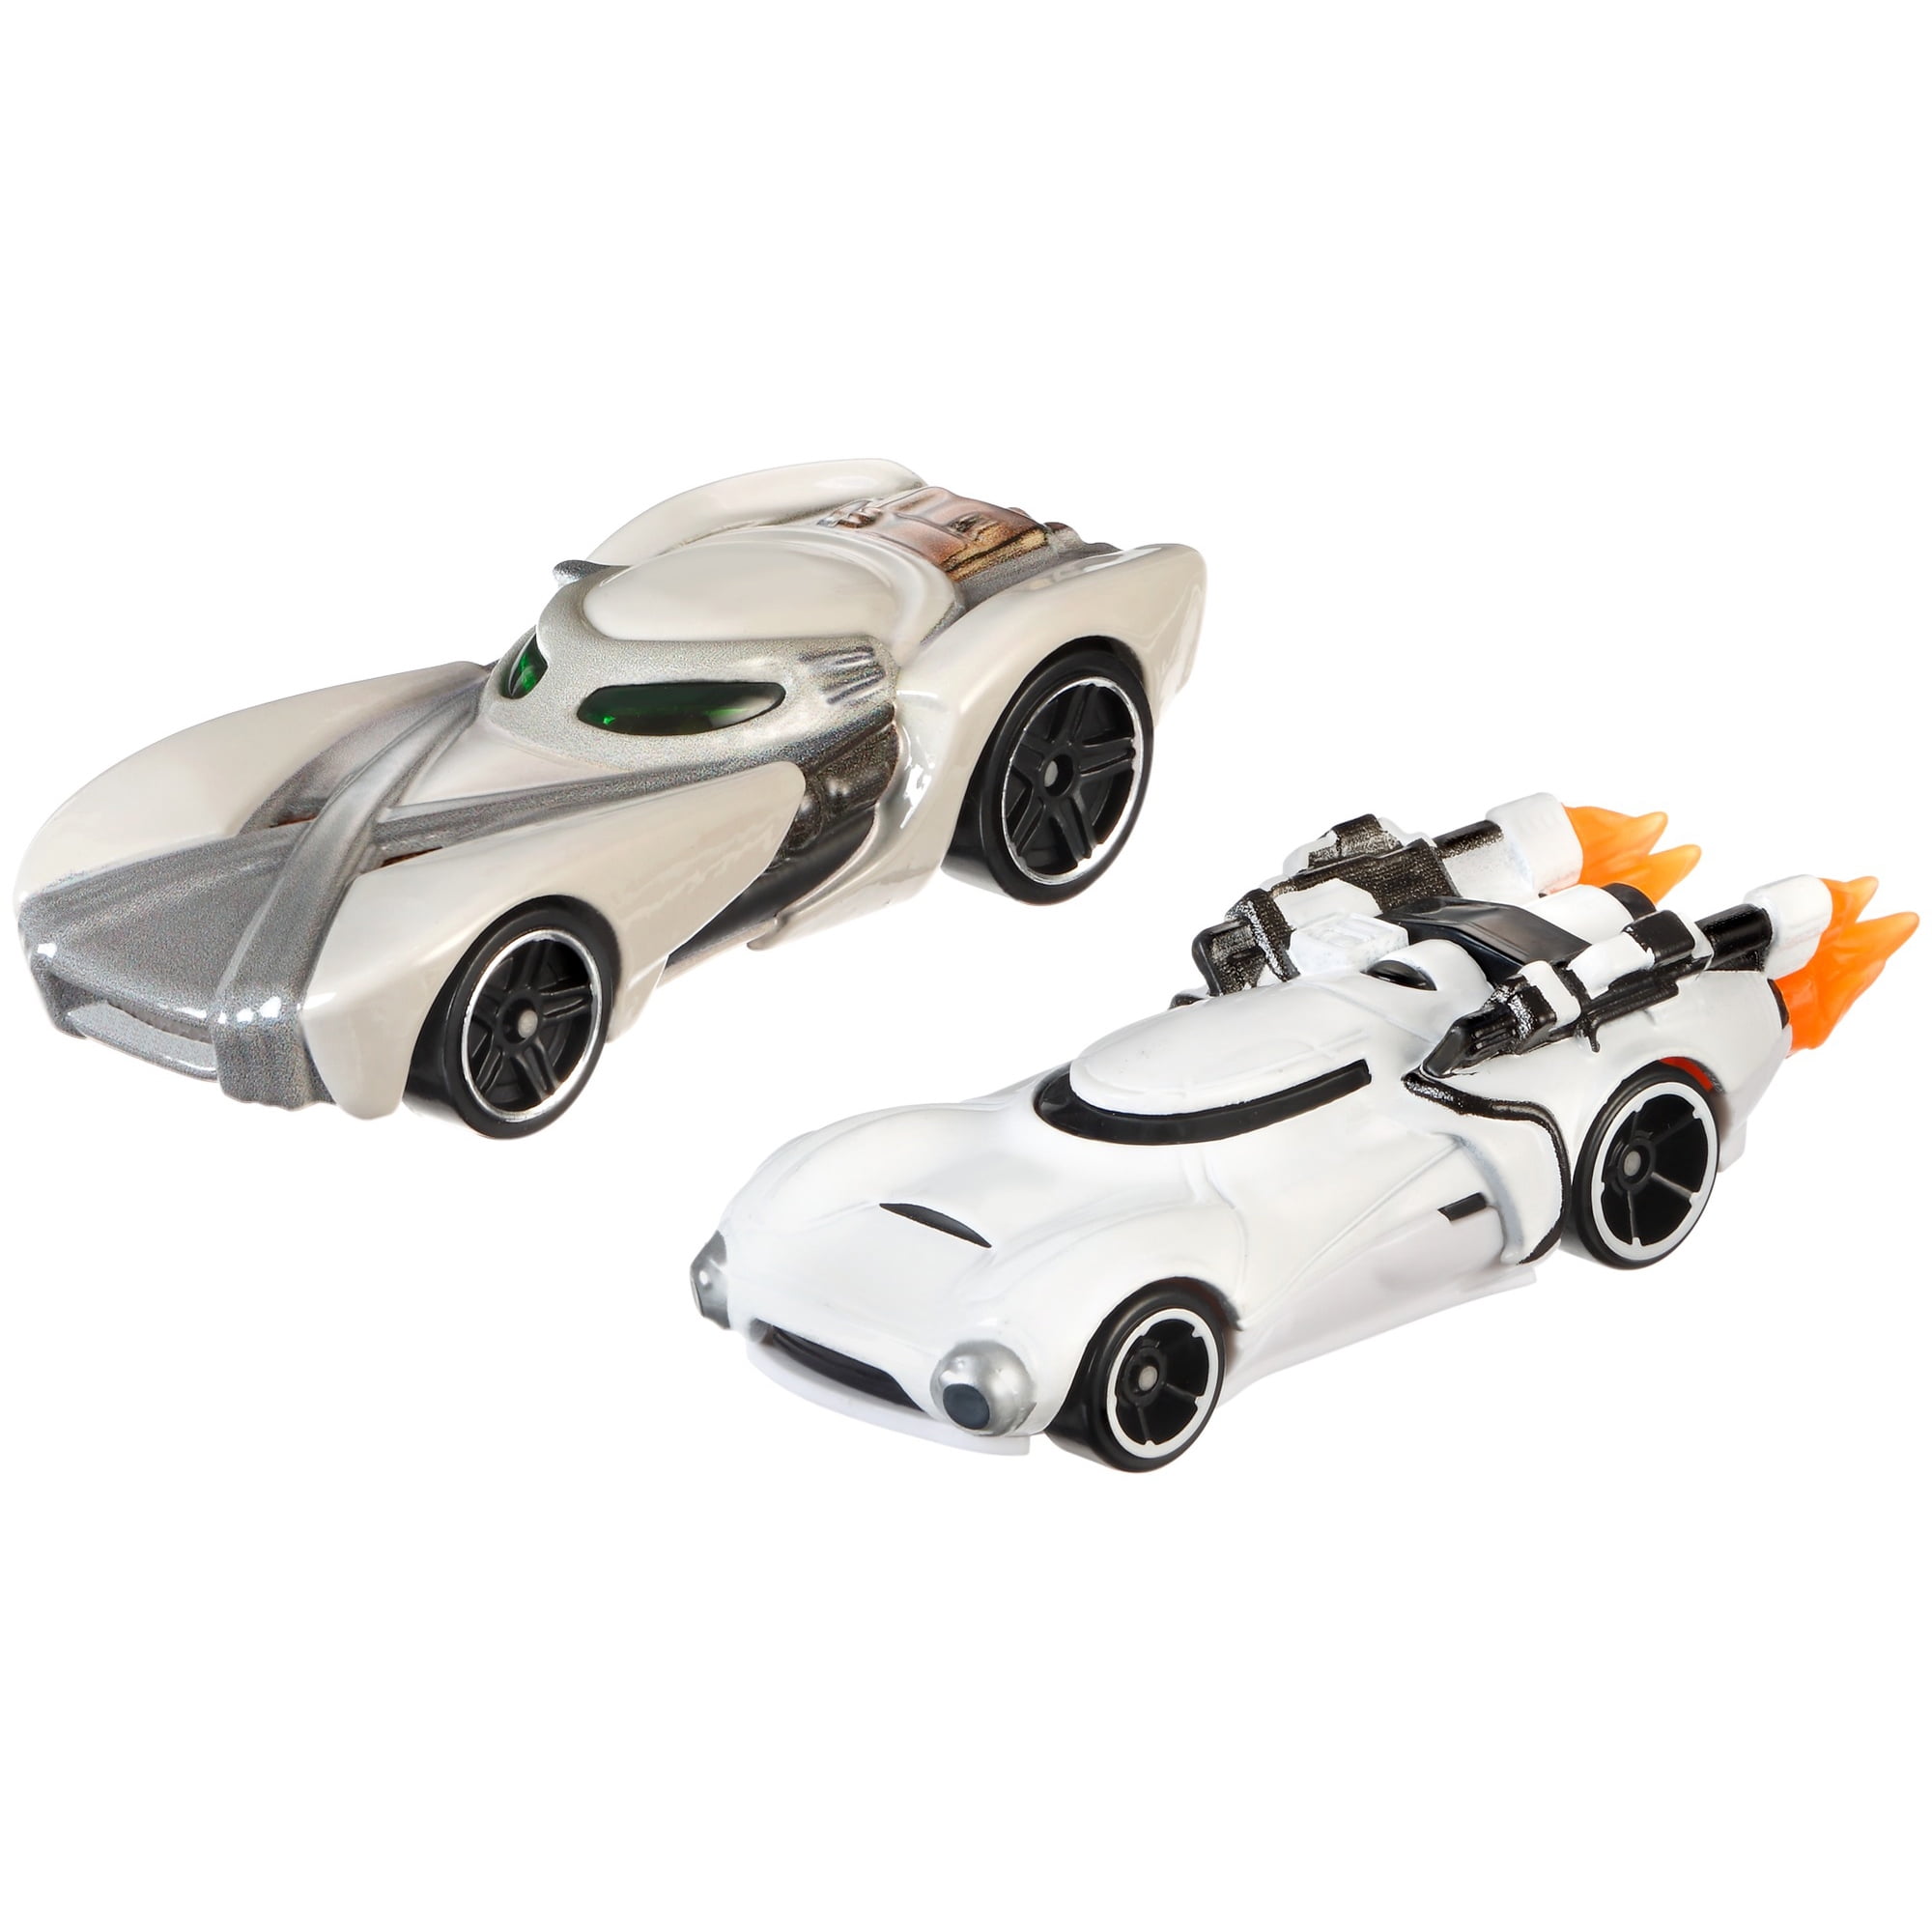 Hot Wheels Mattel Star Wars Collectible Character Car Captain Phasma Vehicle New 